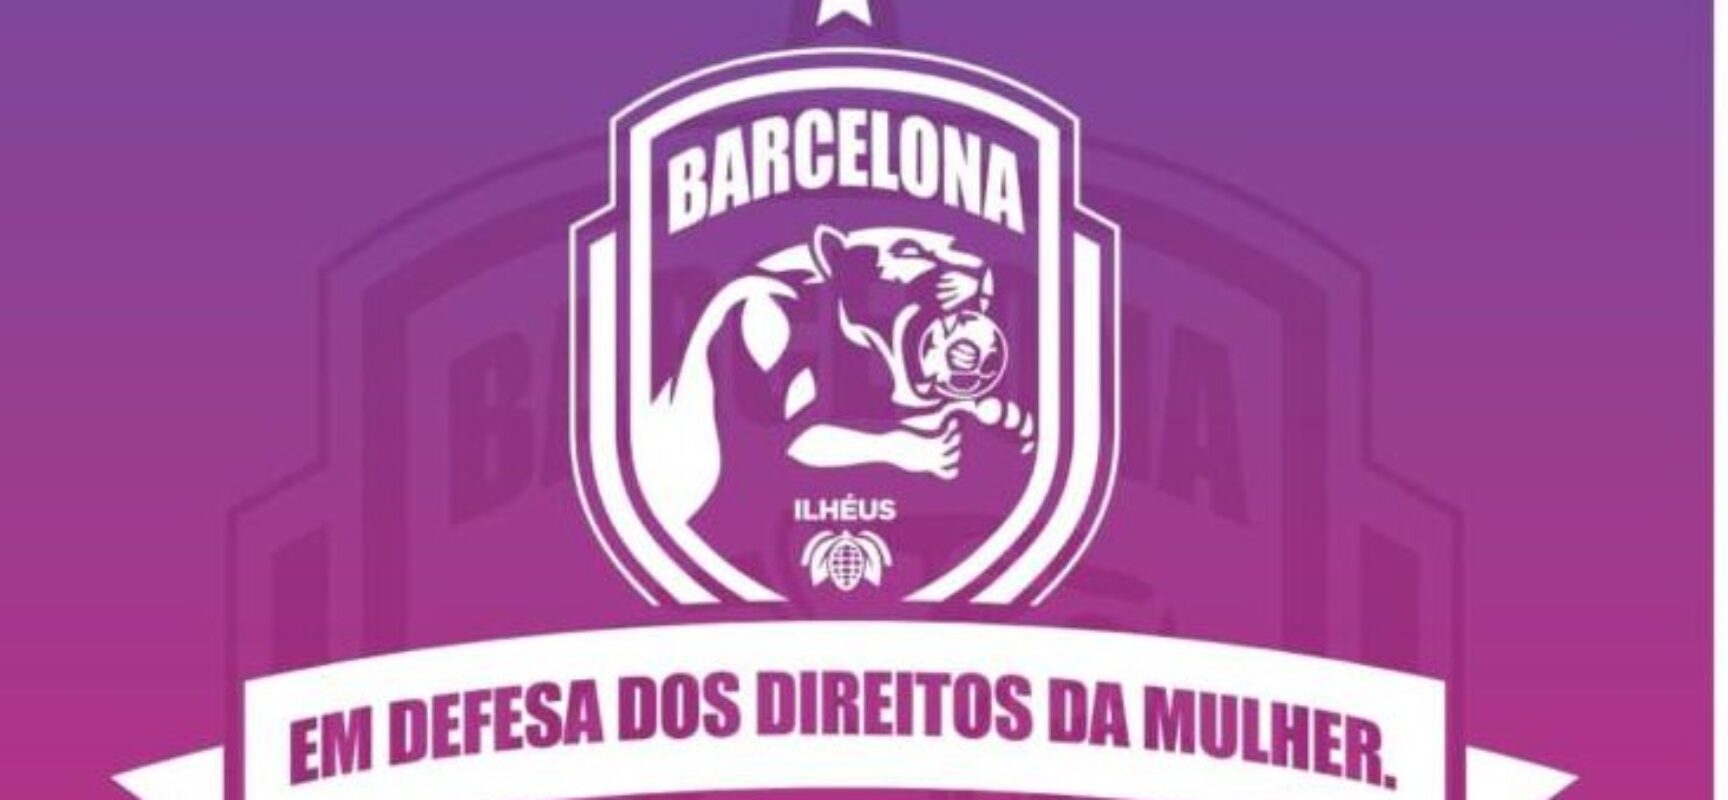 Barcelona de Ilhéus Manifesta Apoio às Mulheres com Uniforme Rosa em Jogo contra o Vitória